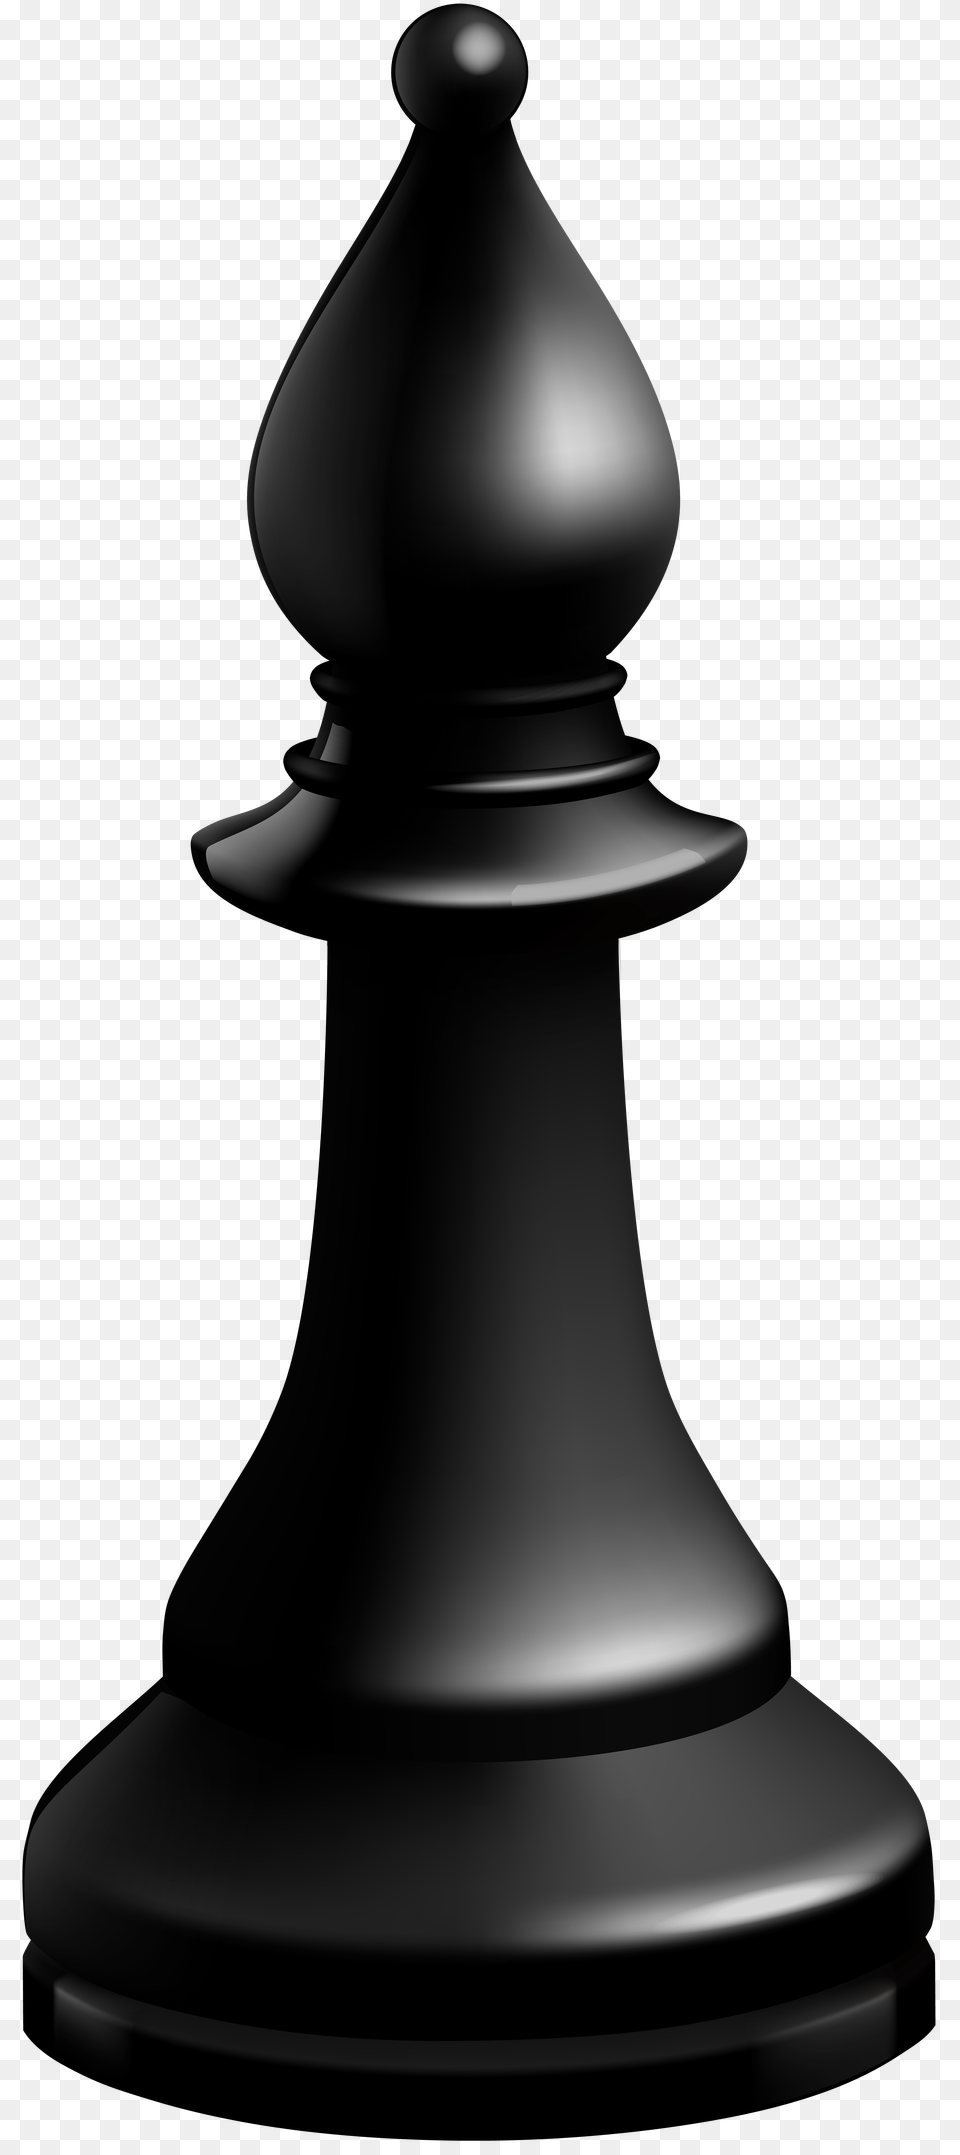 Bishop Black Chess Piece Clip Art, Smoke Pipe, Game Free Png Download